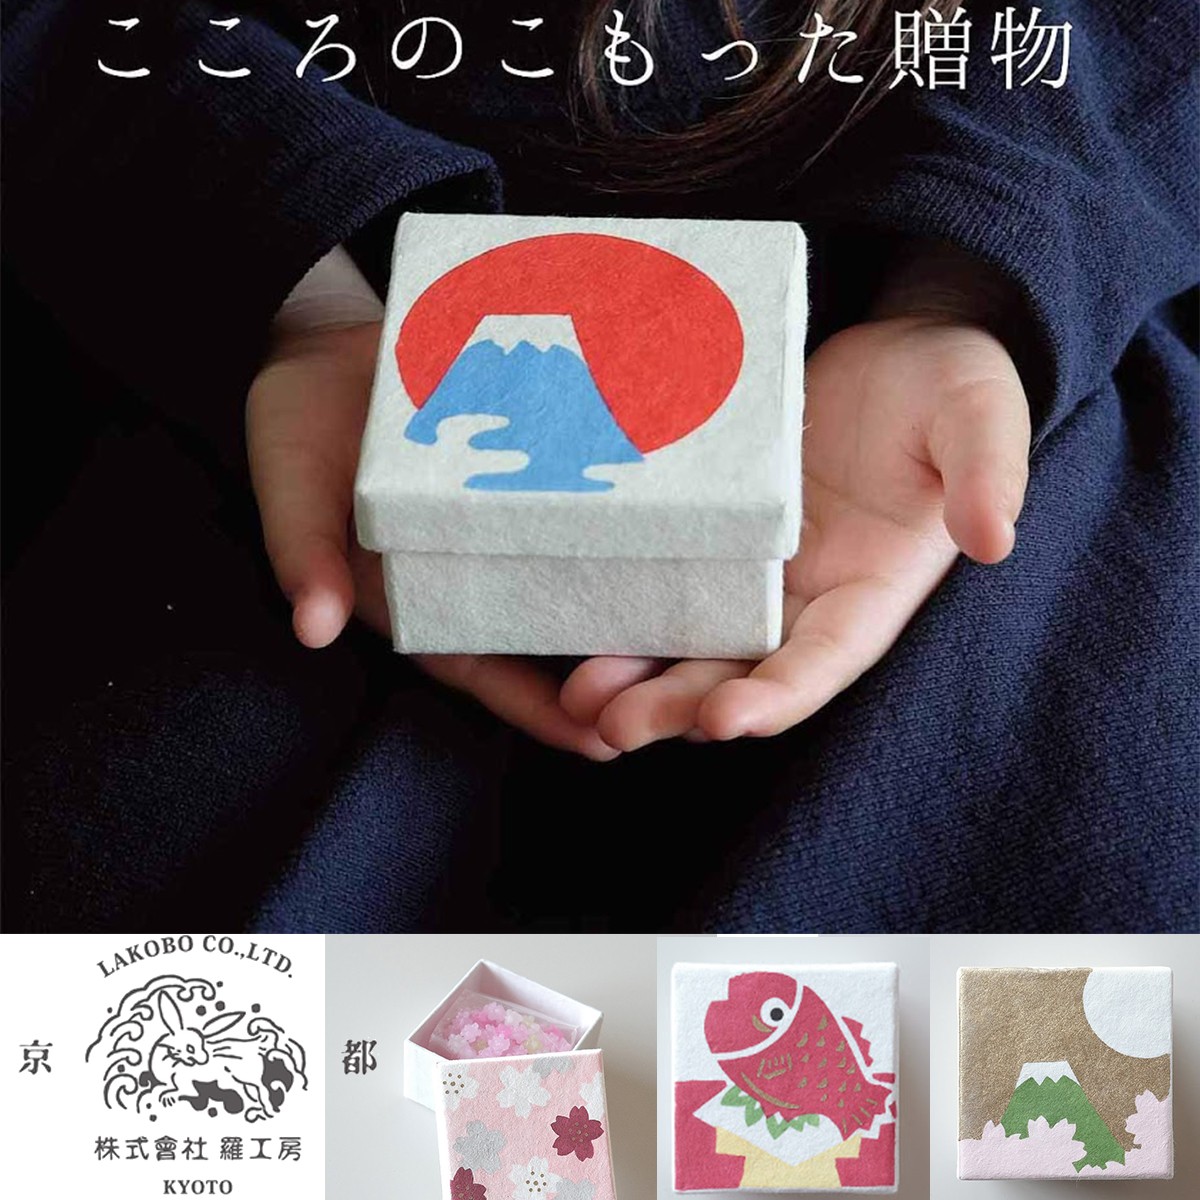 日本製【羅工房】京都の手摺り小箱入り金平糖